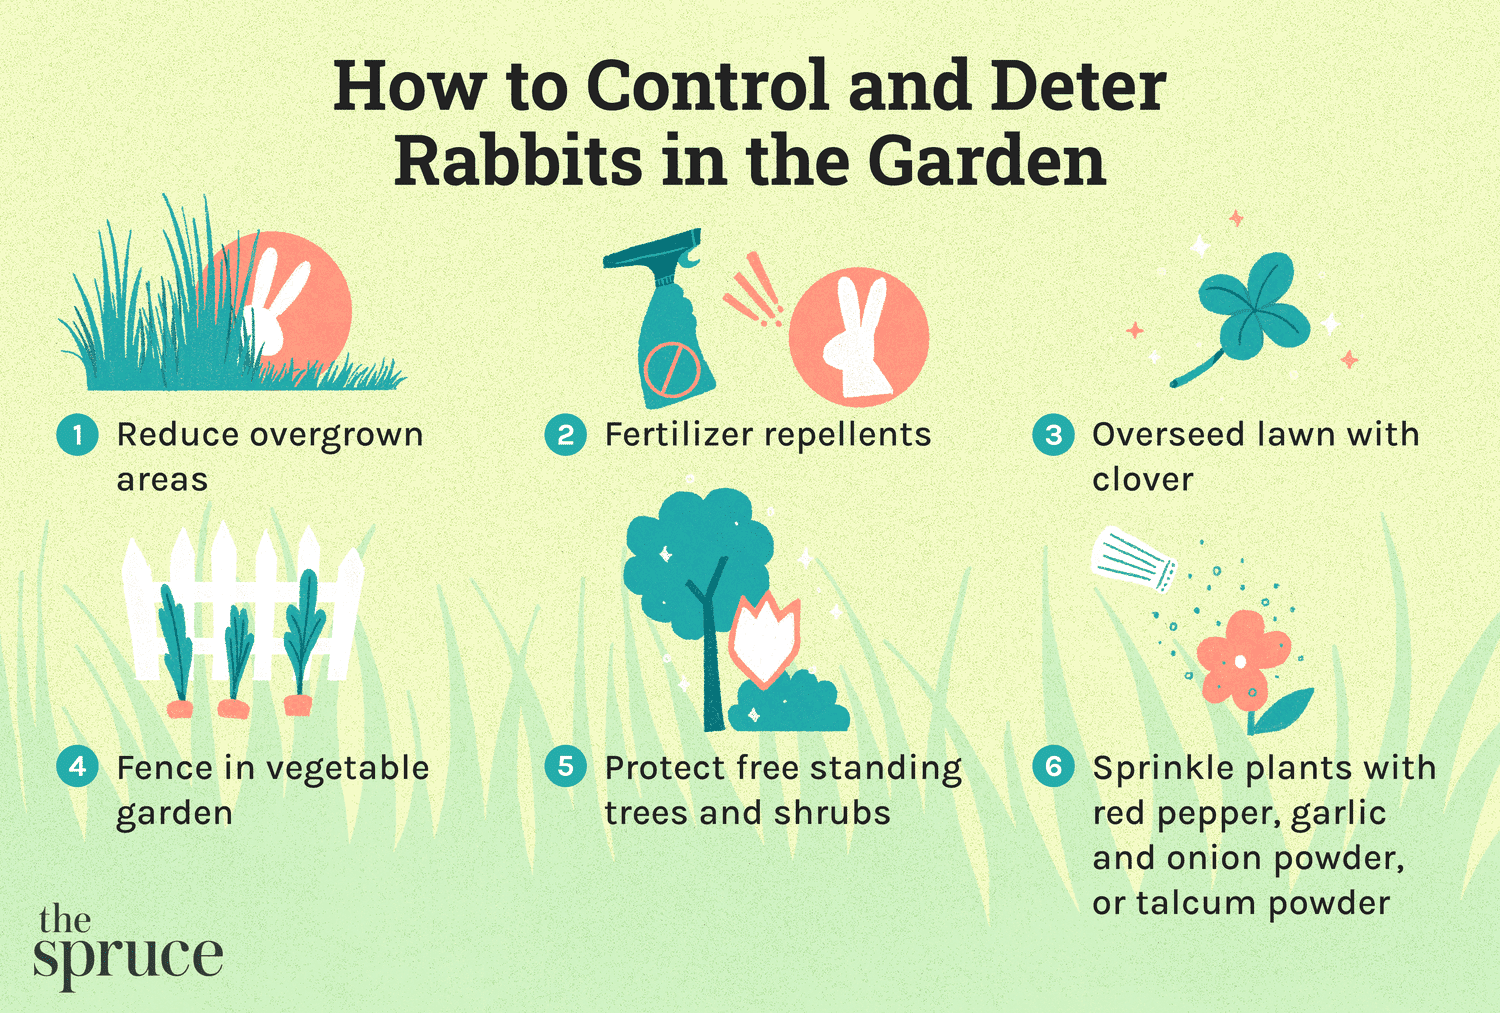 Tipps zur Kontrolle und Abschreckung von Gartenkaninchen